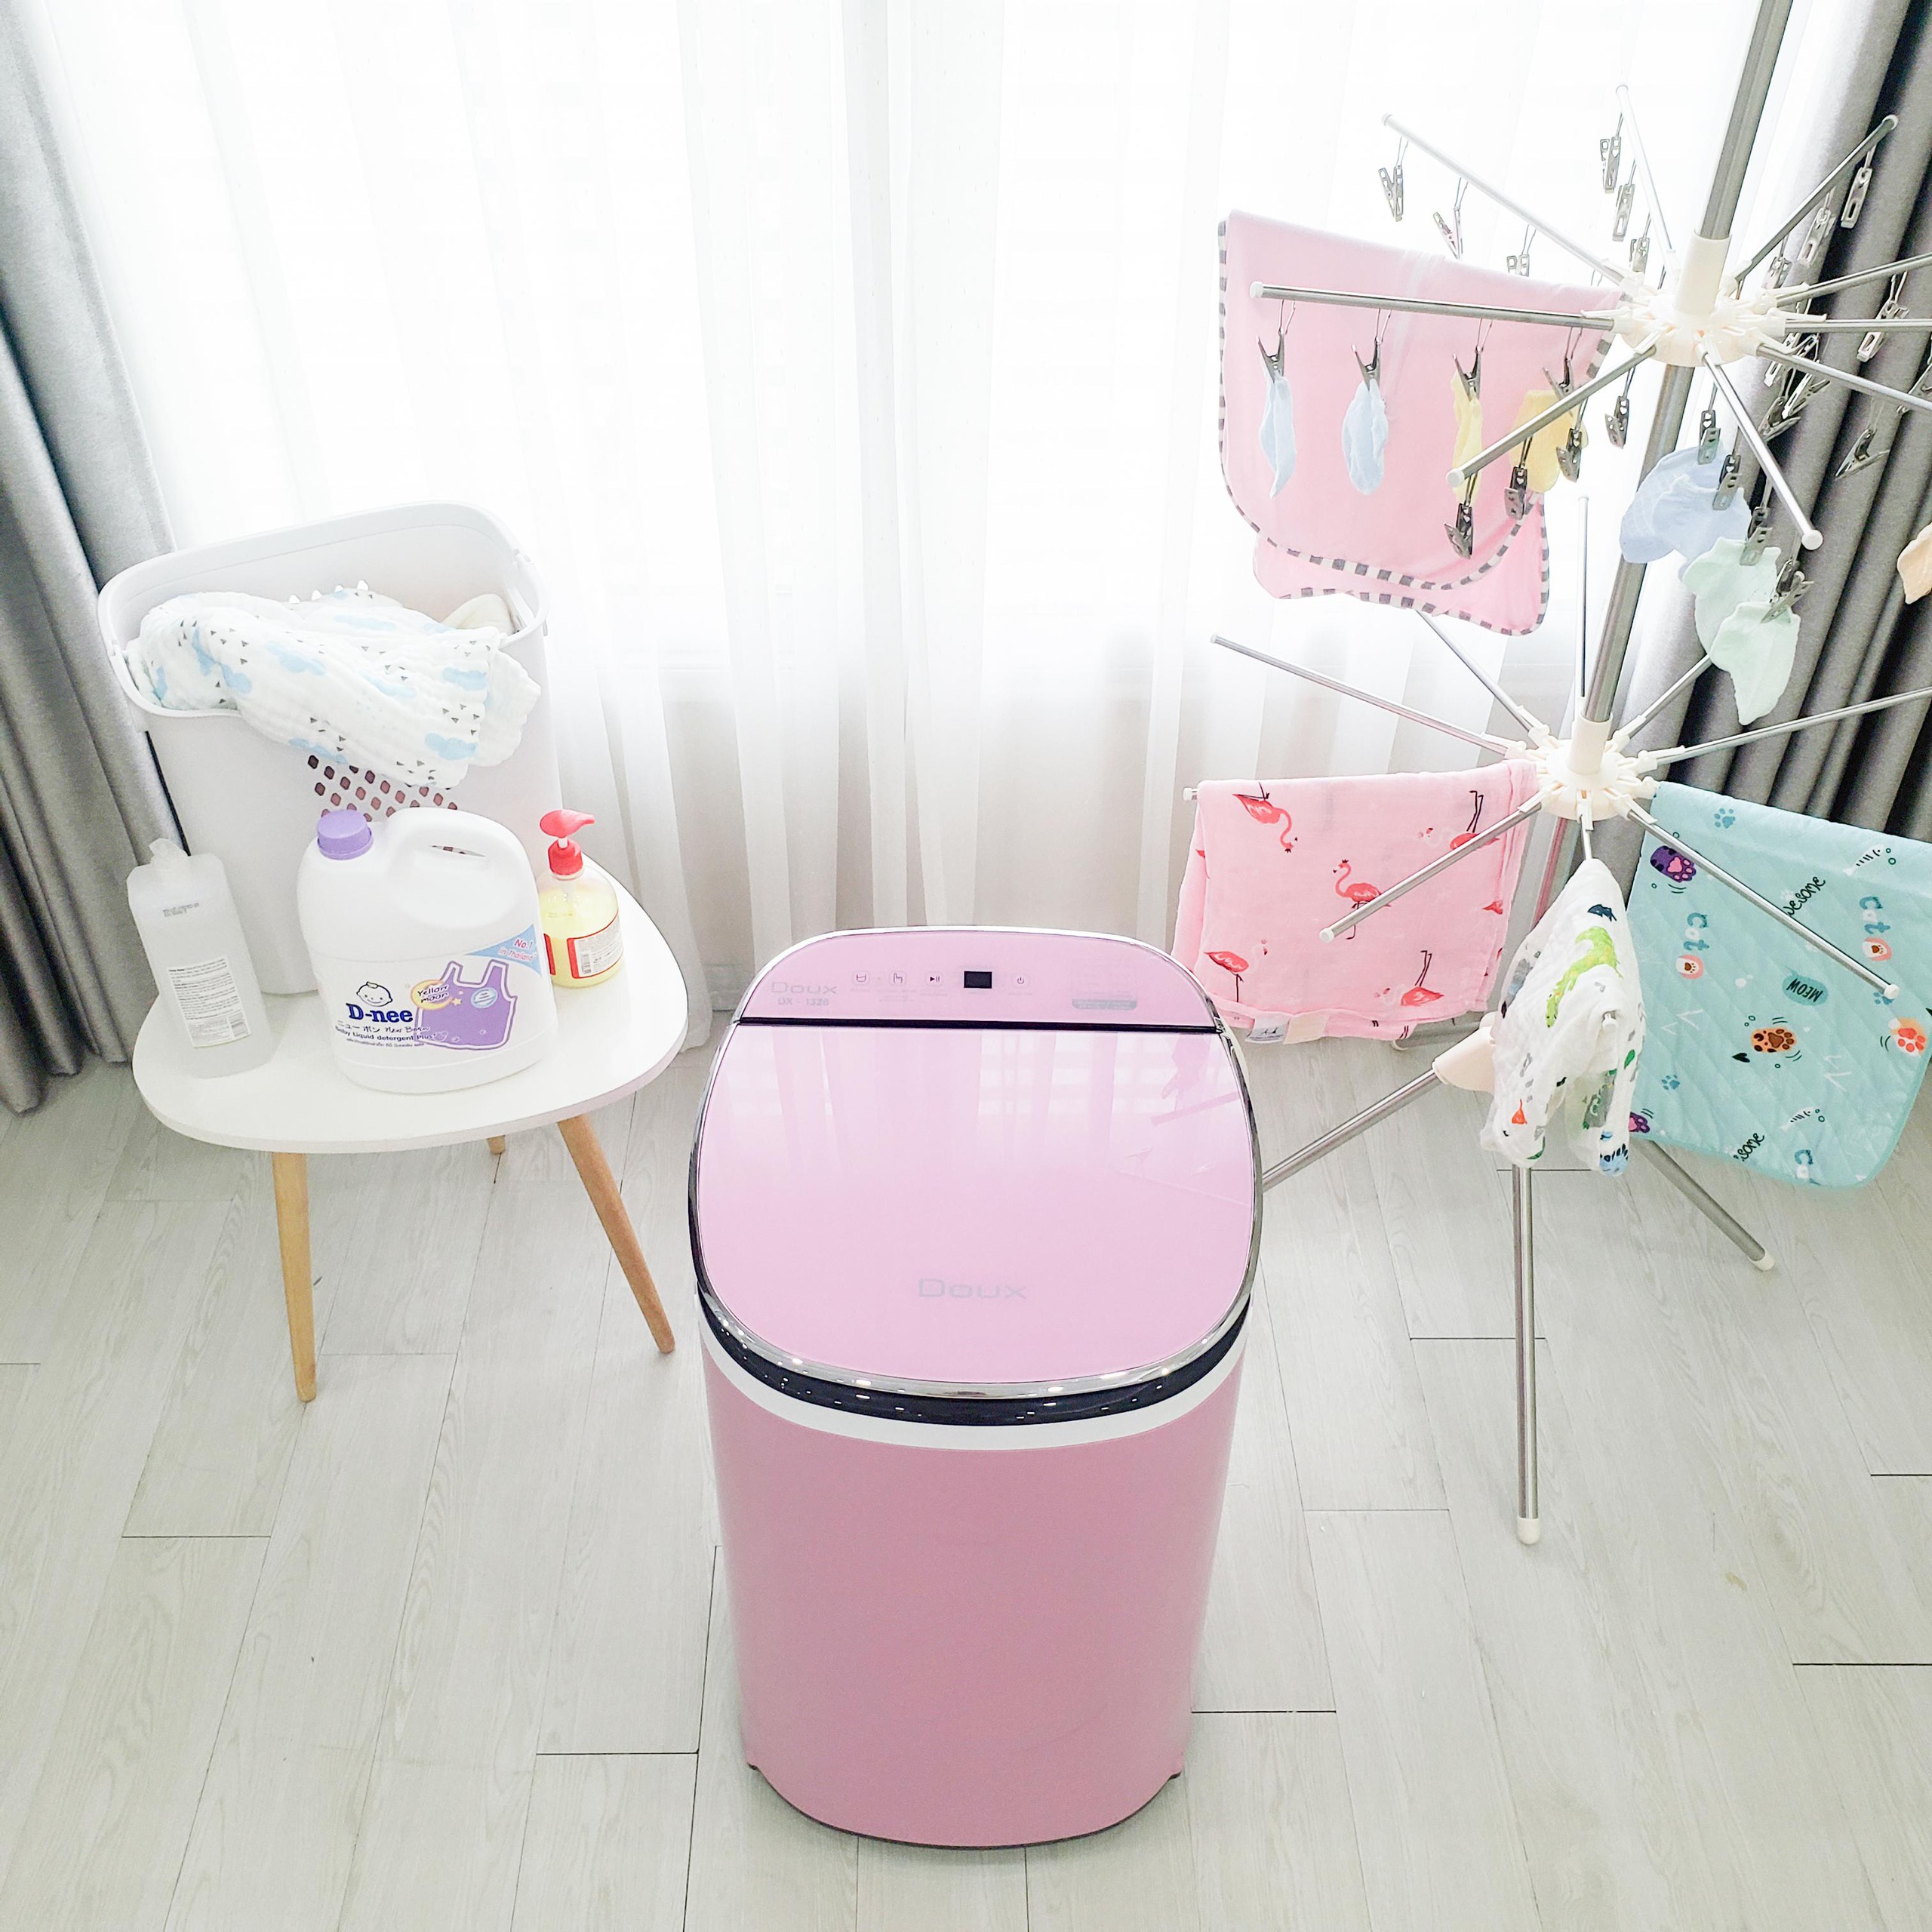 Máy giặt Mini tự động DOUX BẢN LUX, có đèn diệt khuẩn UV, có tính năng giặt đồ cho em bé tối ưu